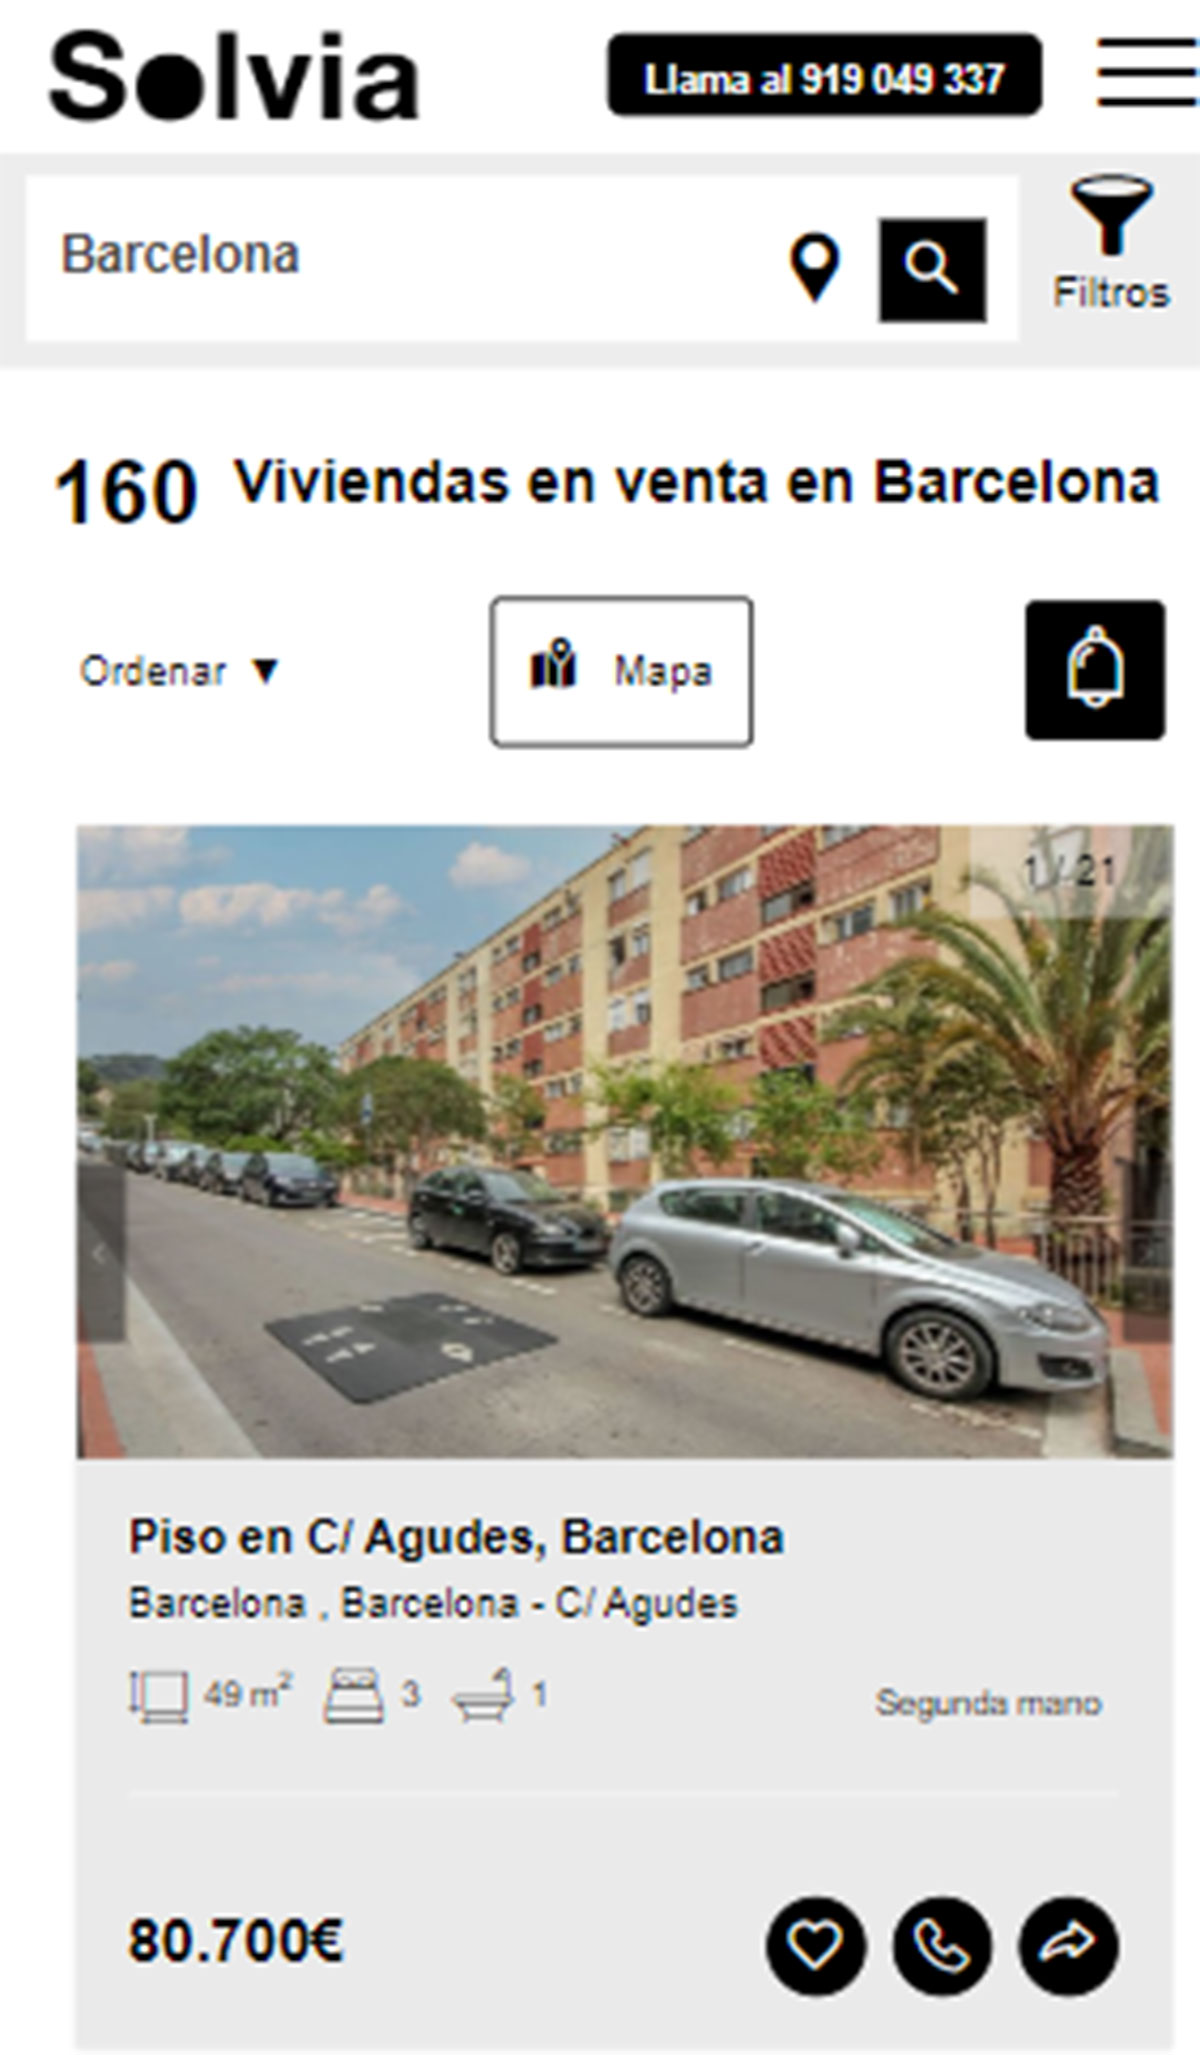 Piso en la ciudad de Barcelona por 80.700 euros